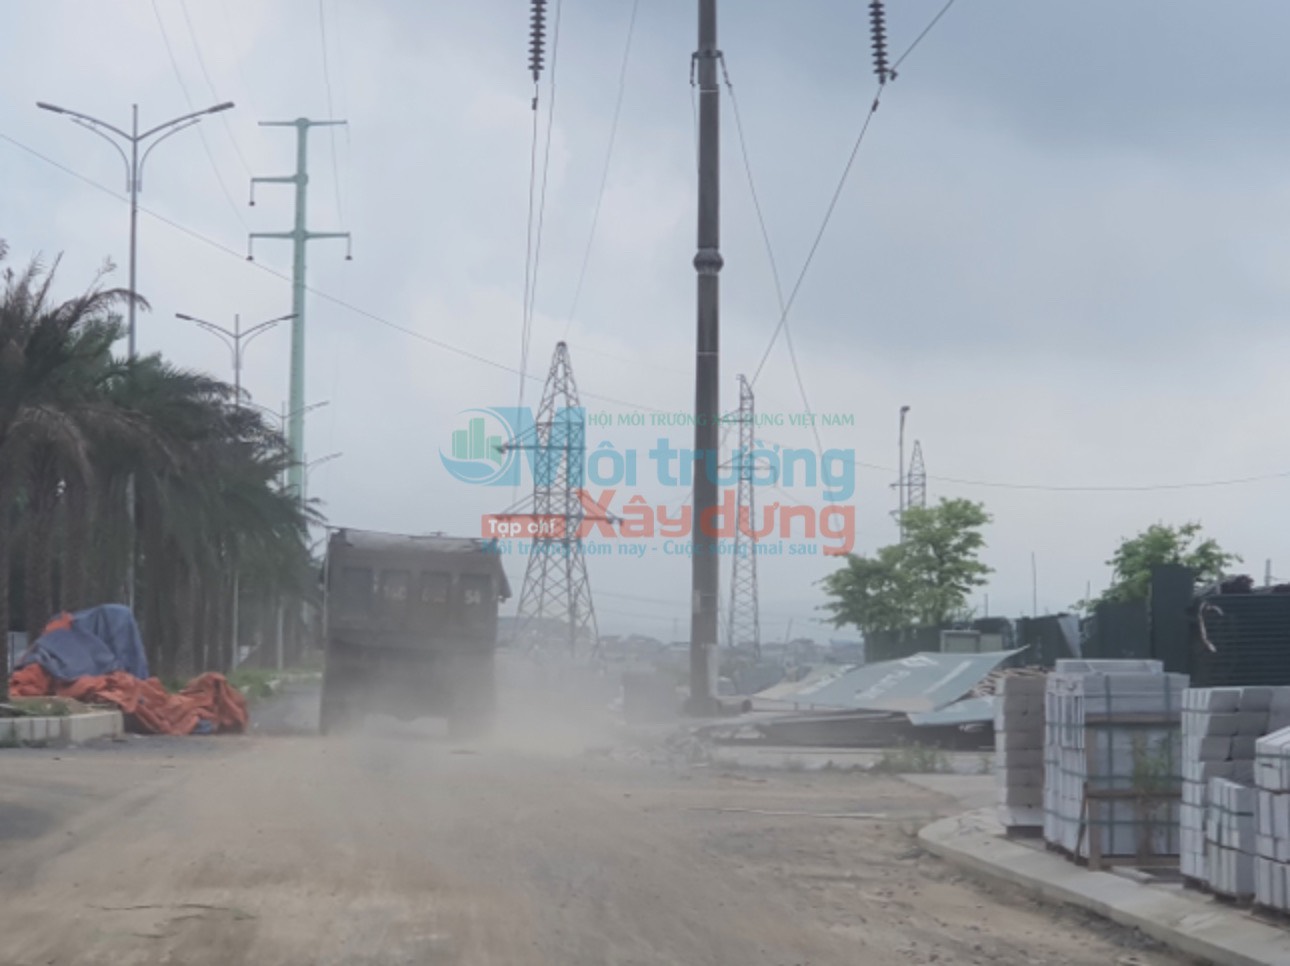 Nghệ An: Nguy cơ tai nạn lao động tại Công trường xây dựng Khu đô thị Central Park Đô Lương